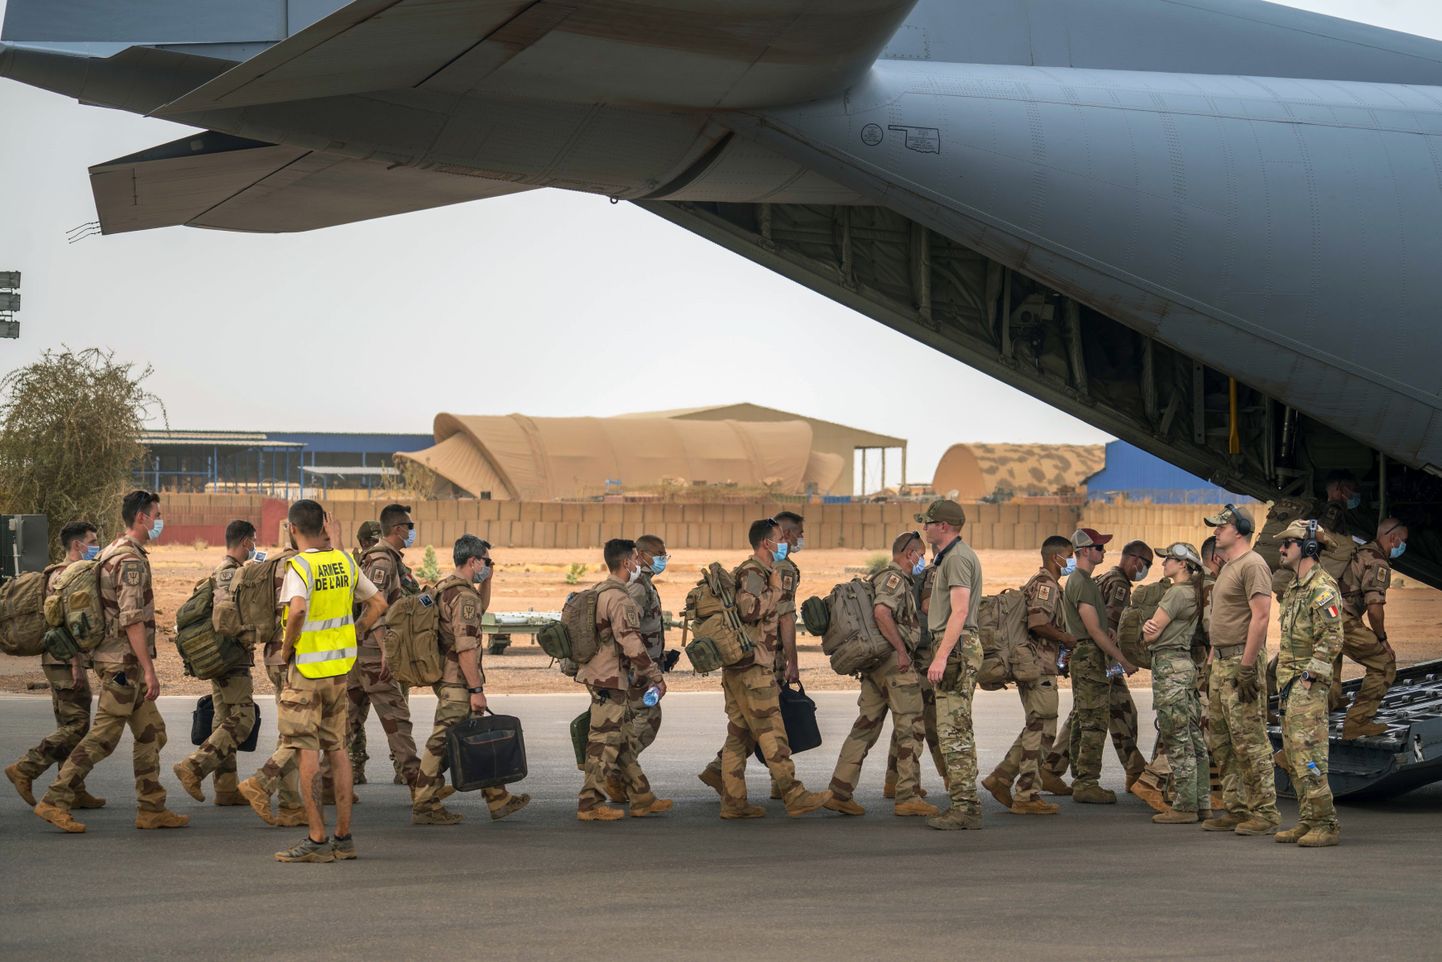 Prantsuse sõdurid 2021. aastal USA transpordilennukiga Malist lahkumas.